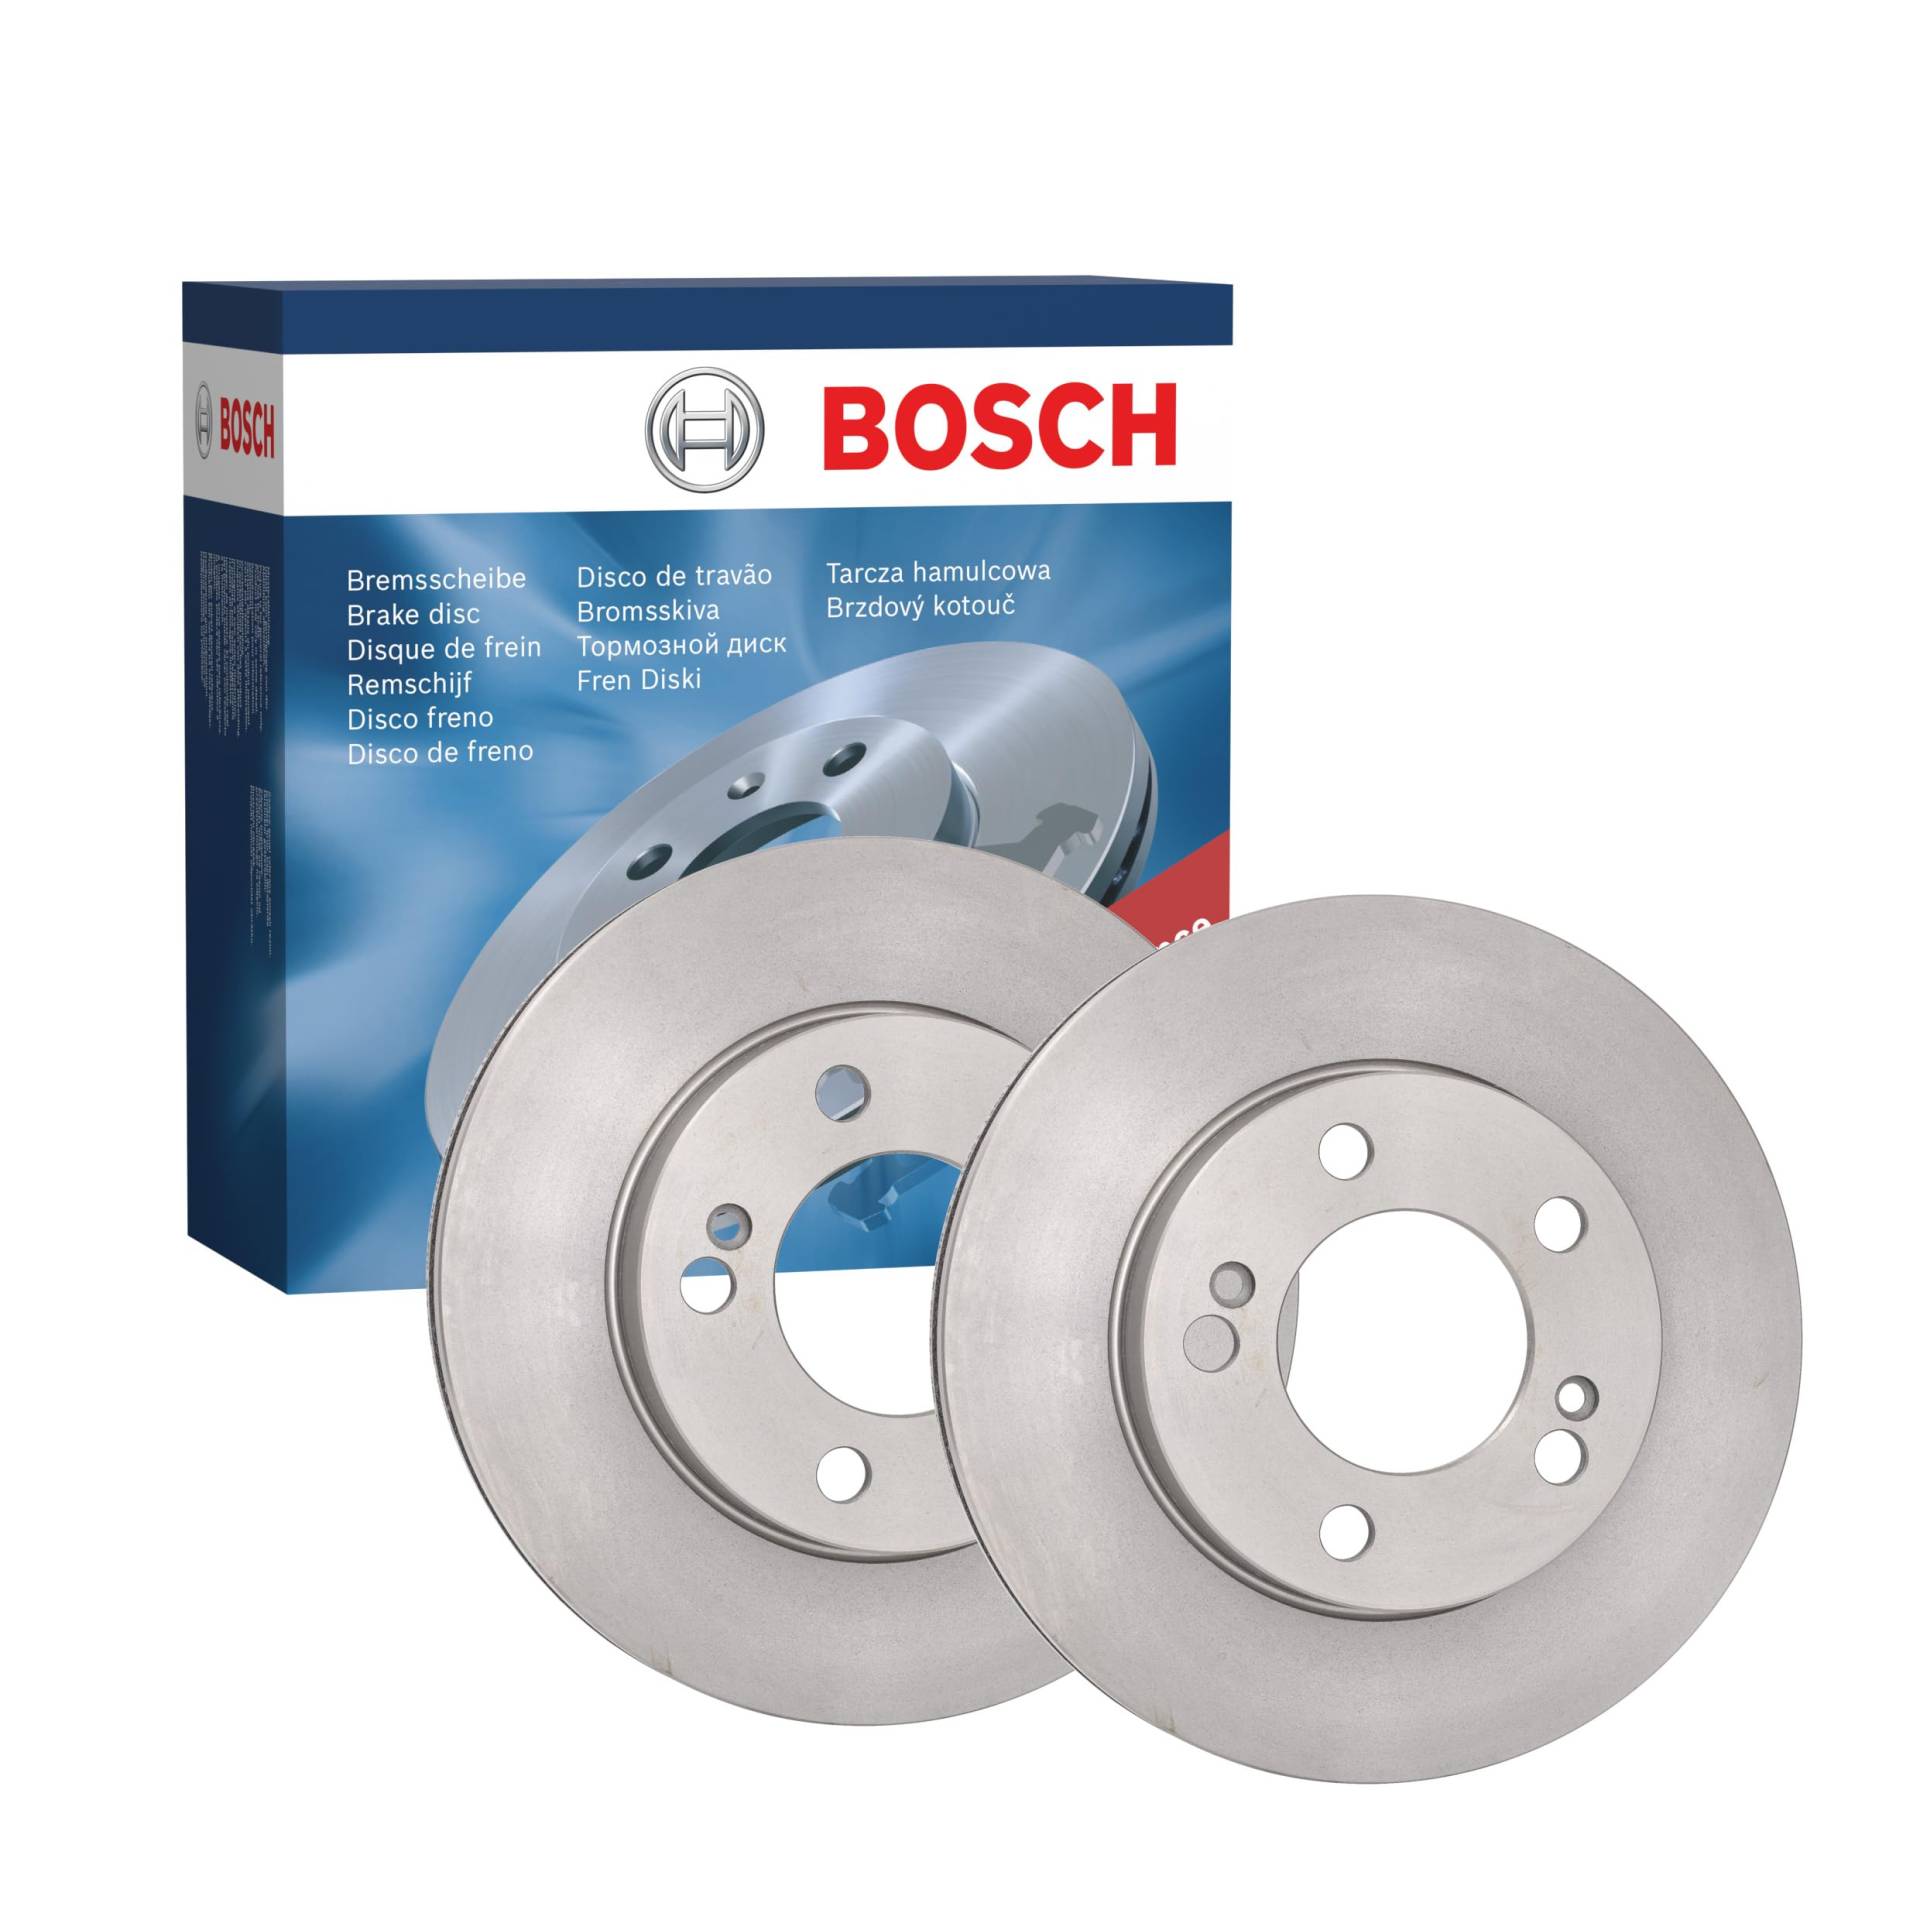 Bosch BD2453 Bremsscheiben - Vorderachse - ECE-R90 Zertifizierung - zwei Bremsscheiben pro Set von Bosch Automotive